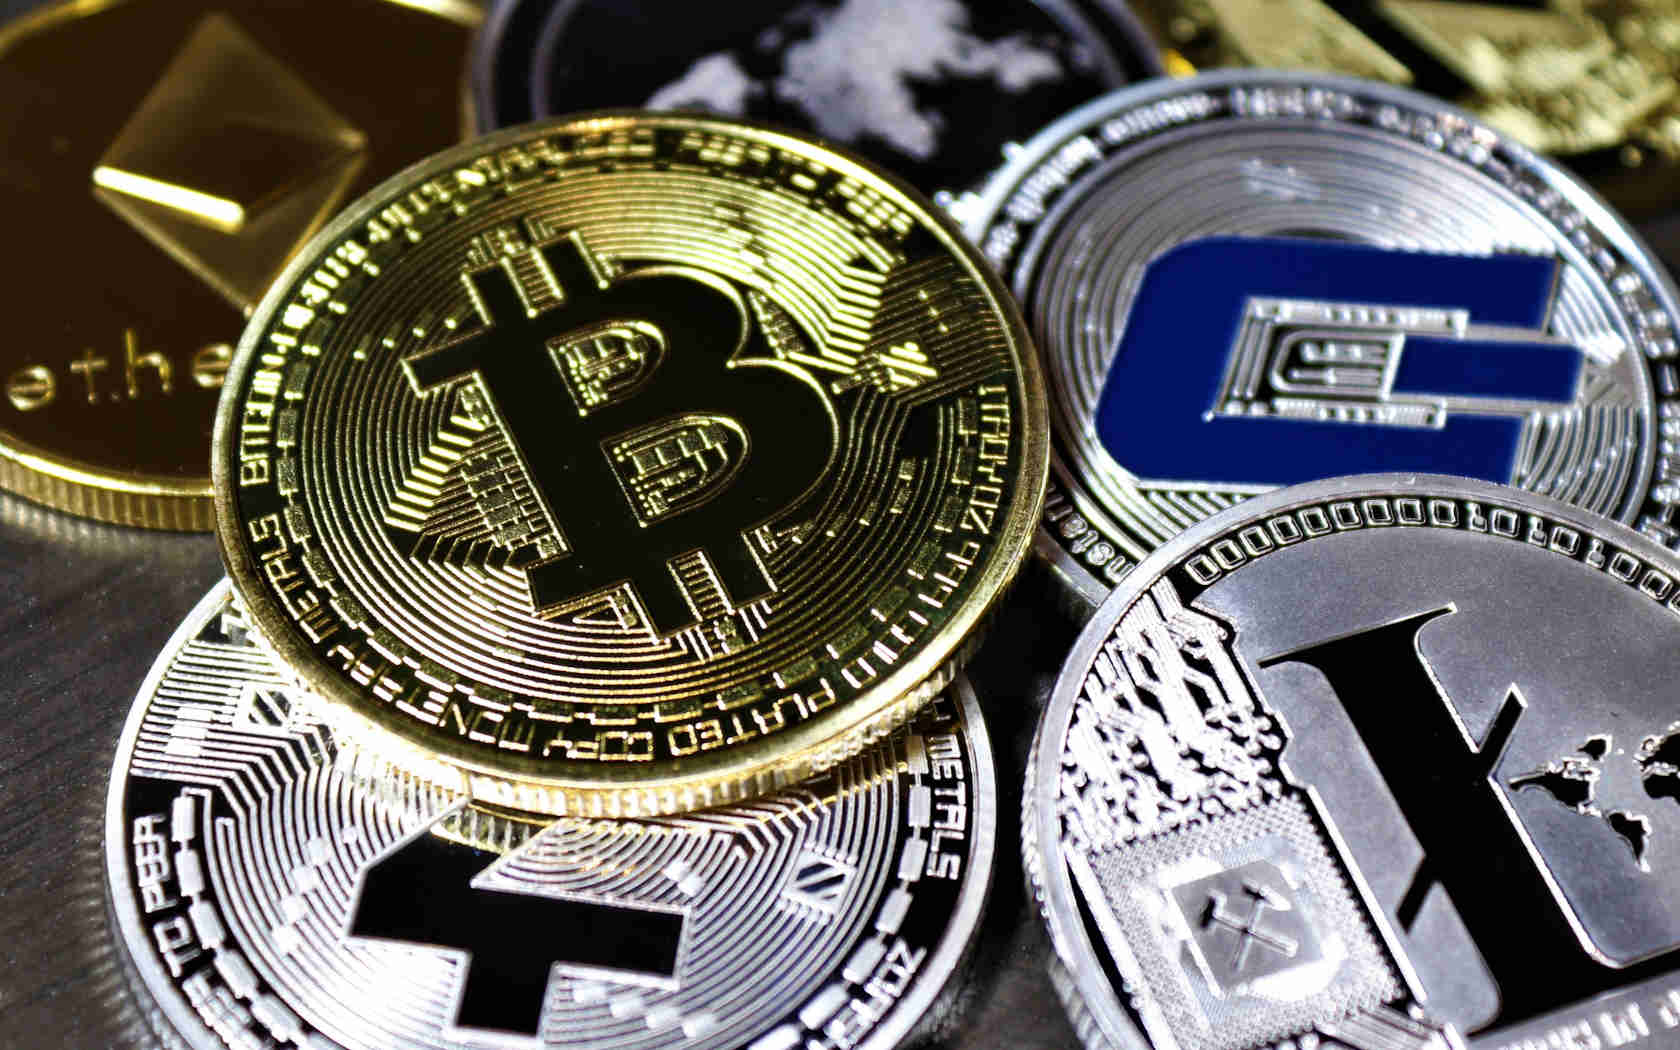 Beleggen in cryptocurrencies zoals Bitcoin, Ethereum, en andere